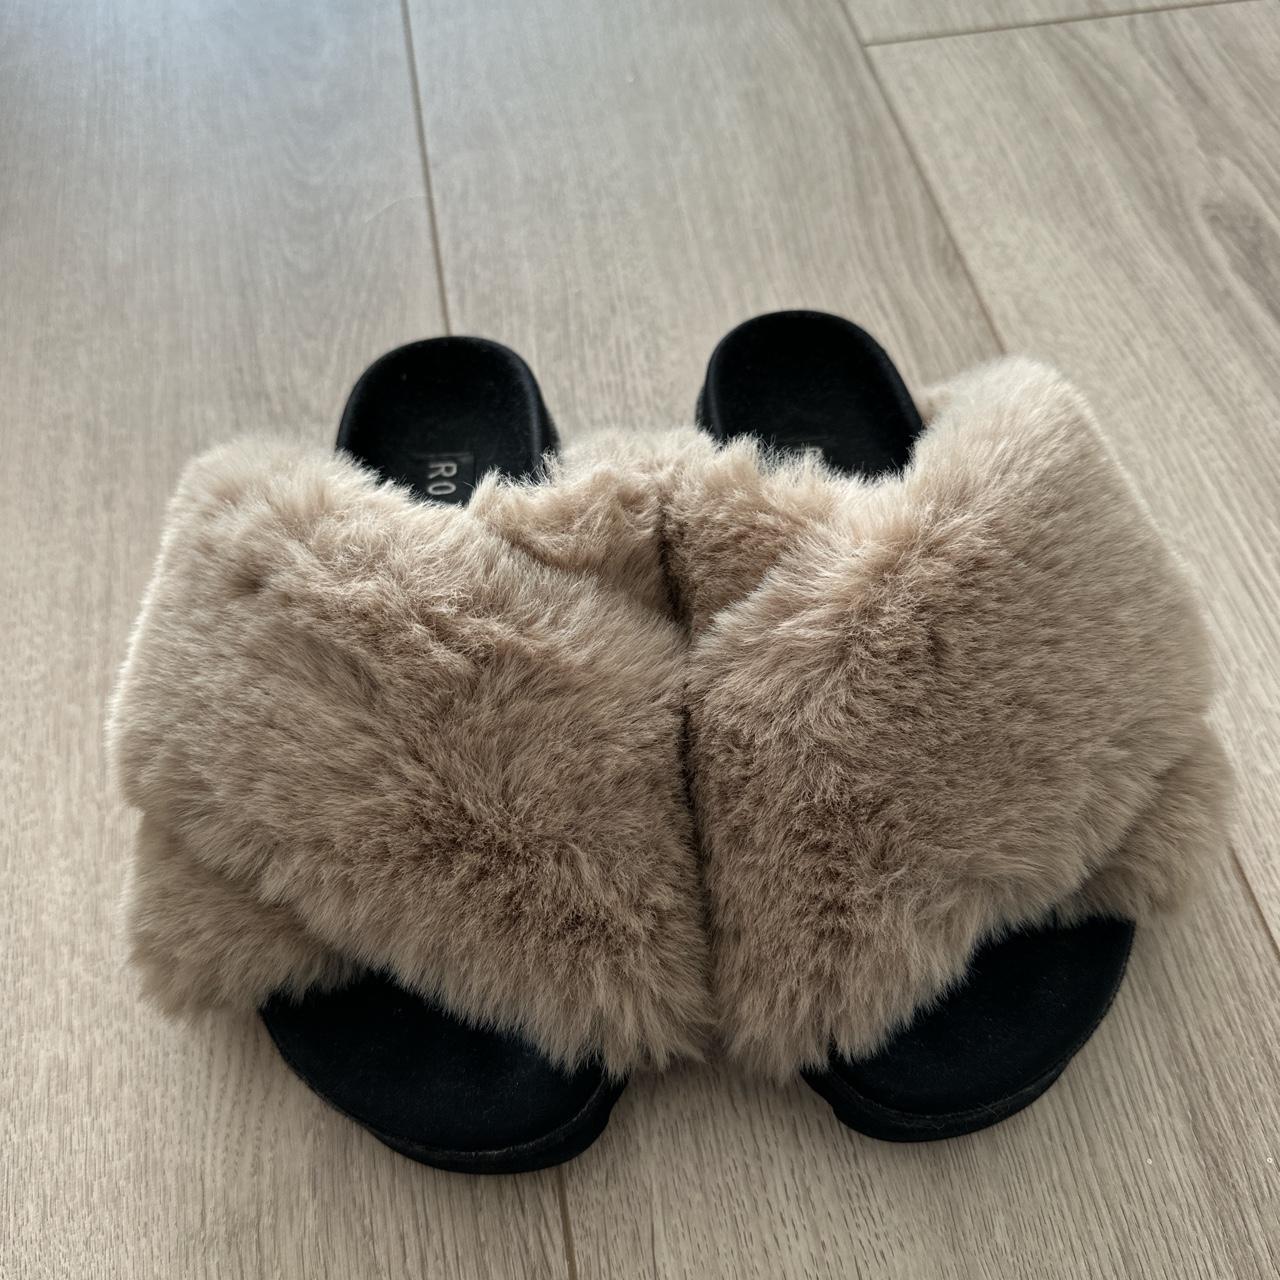 Roam fuzzy slippers - Depop